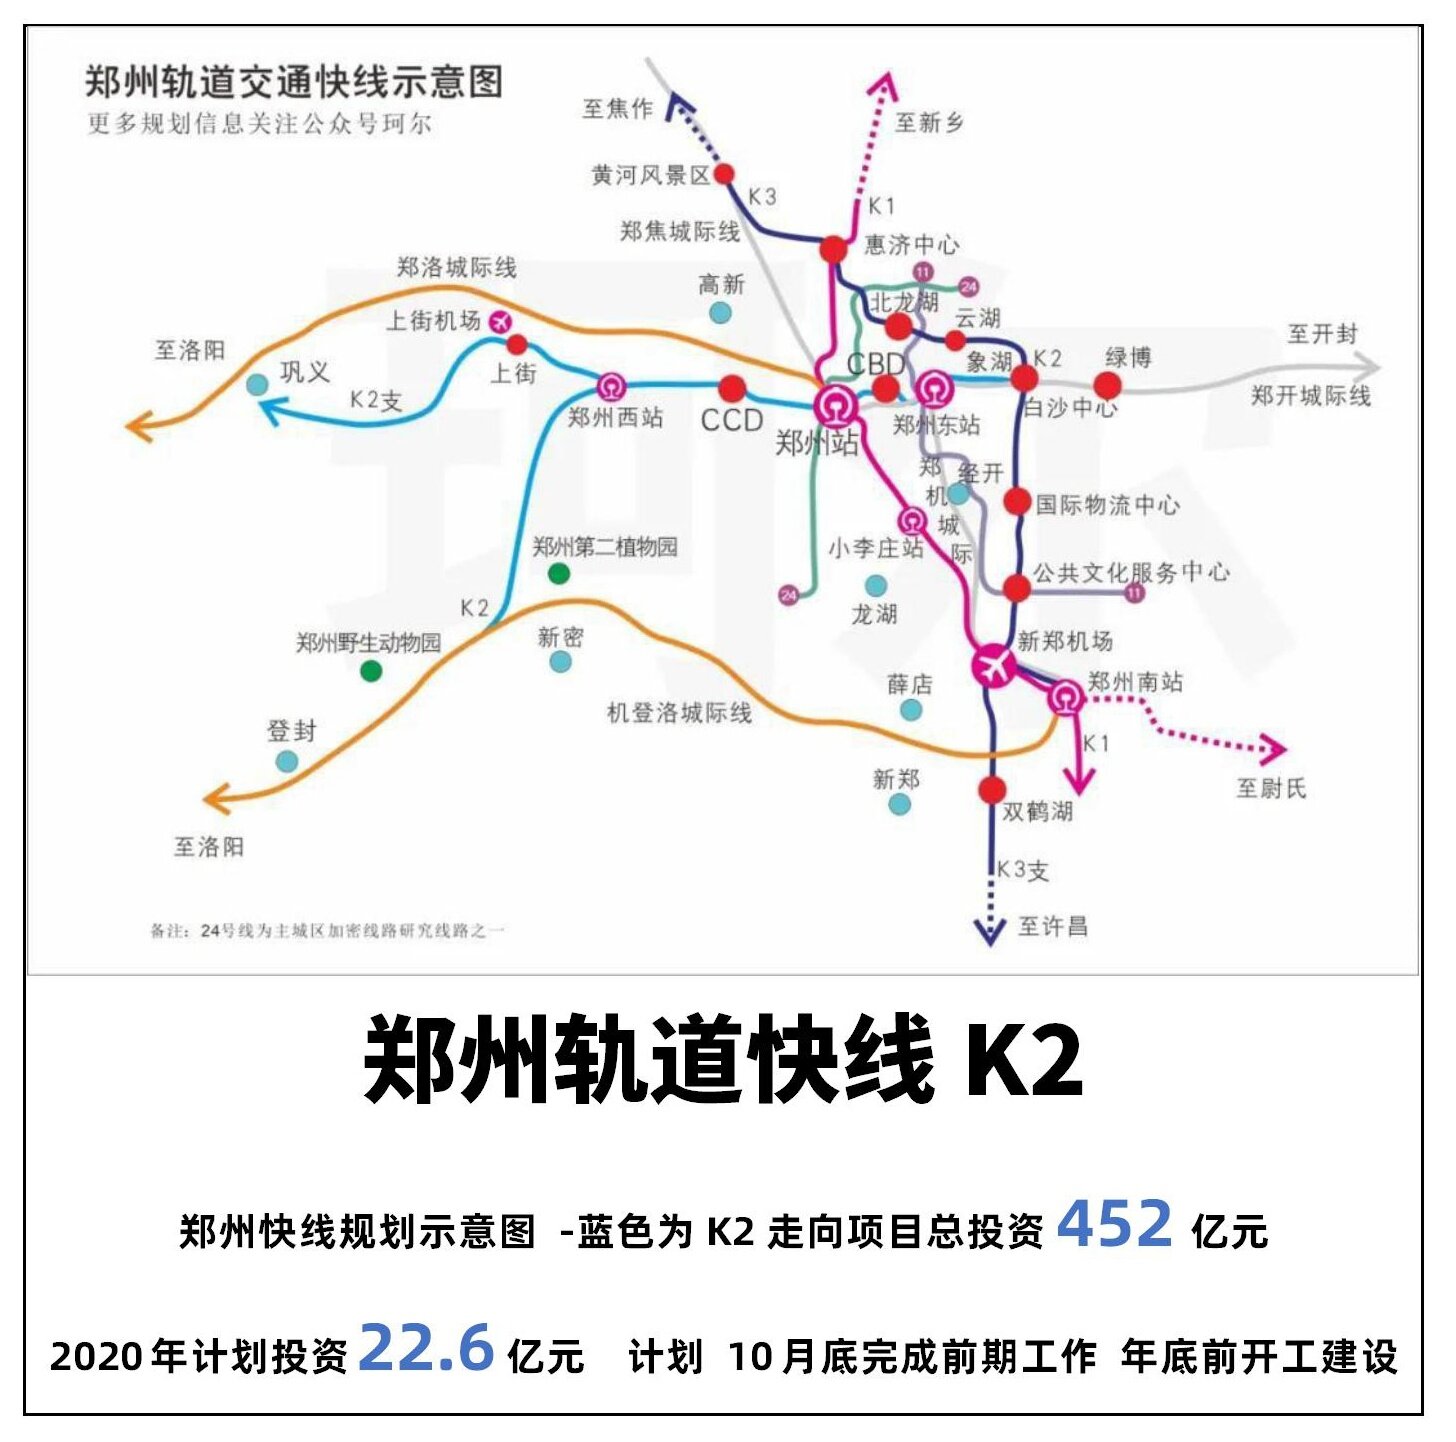 长沙磁浮快线26日试运行 最早明年3月载客运营_湖南频道_凤凰网